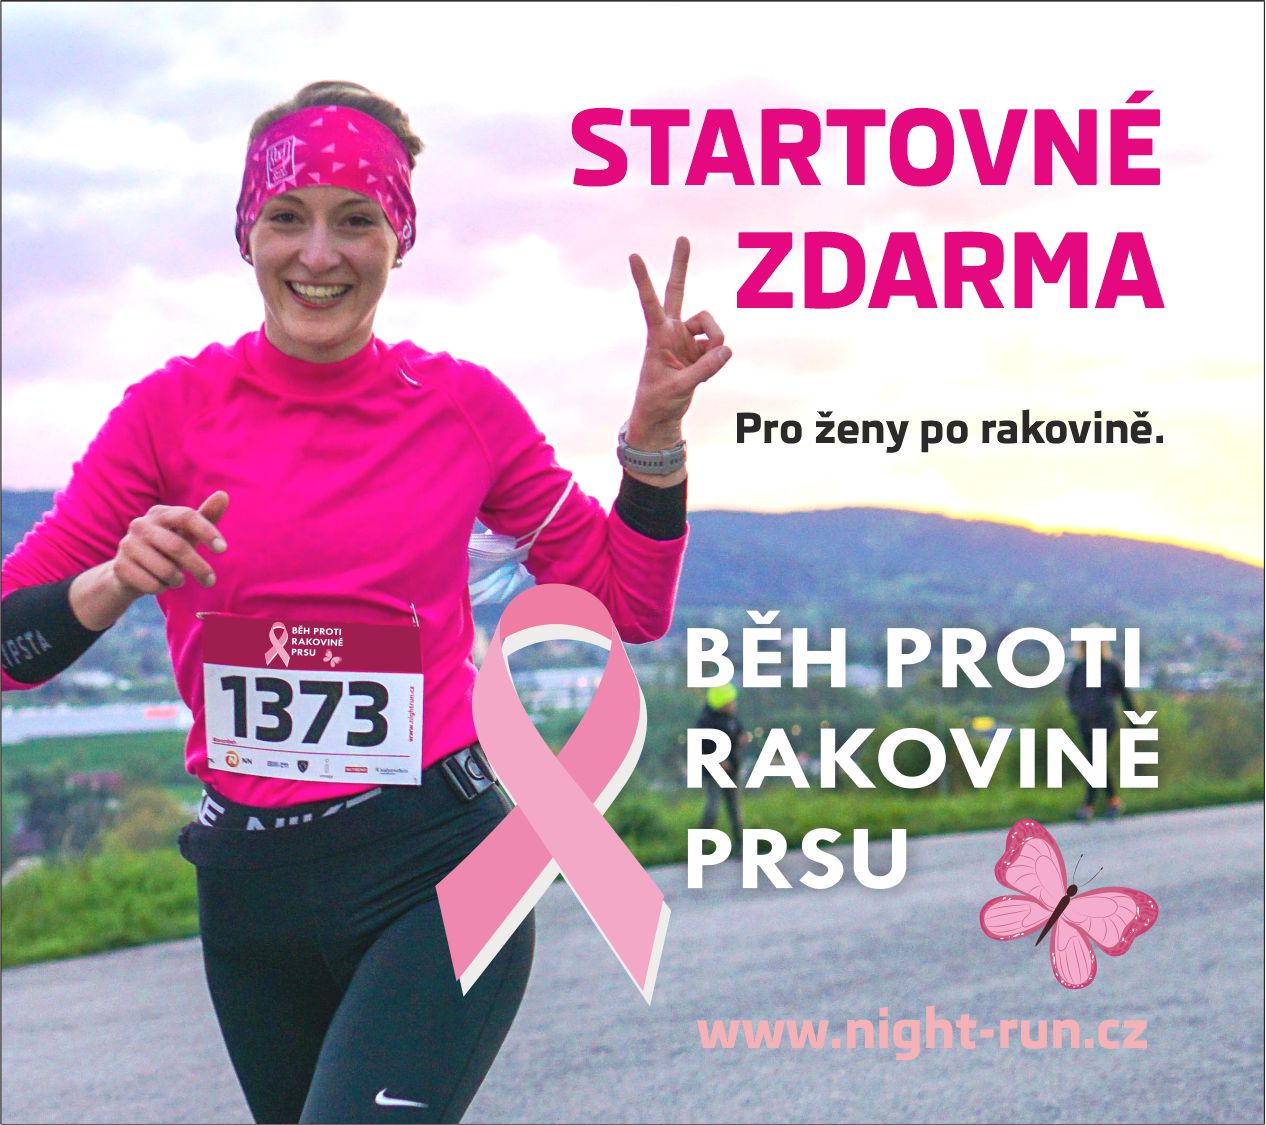 Startovné na Night run běh pro pacientky s rakovinou prsu ZDARMA